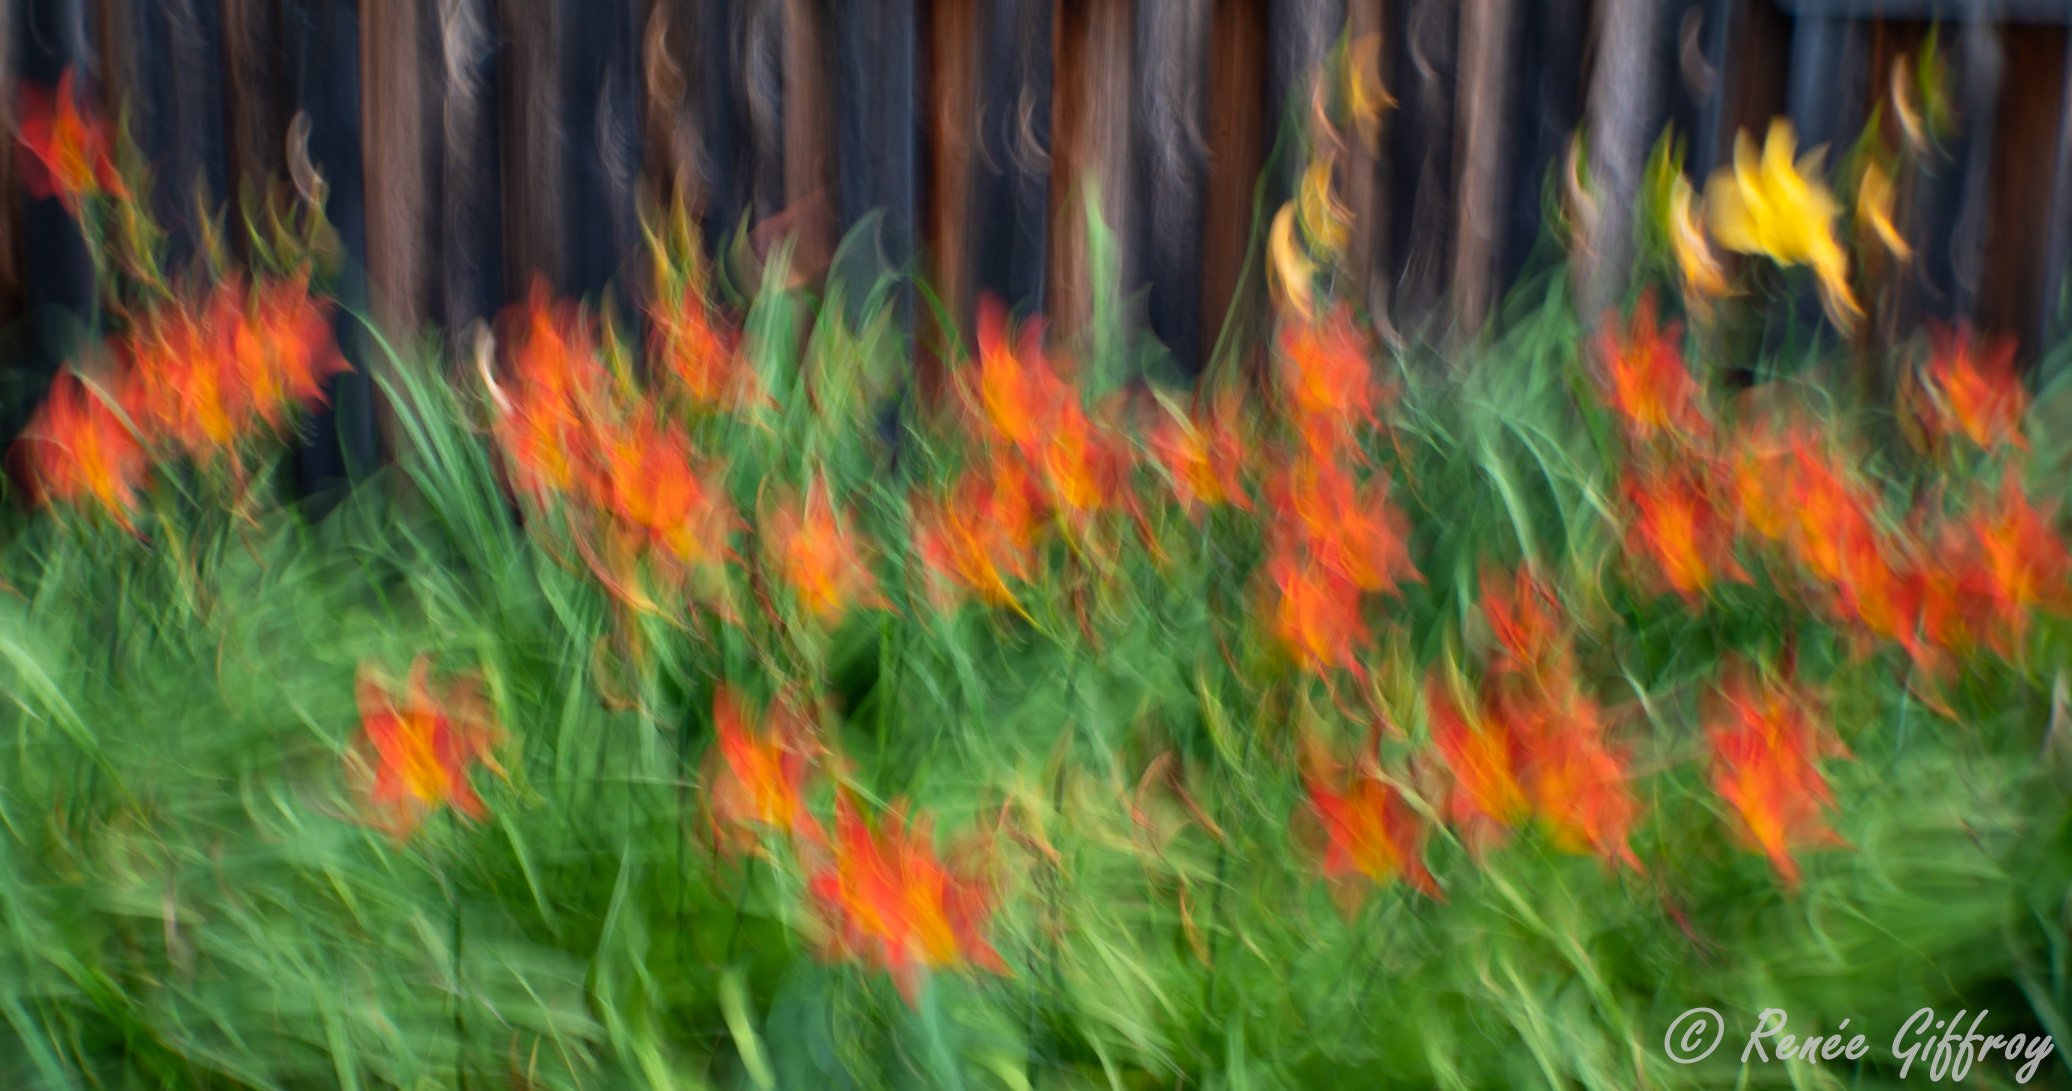 Orange flowers against fence for web.jpg